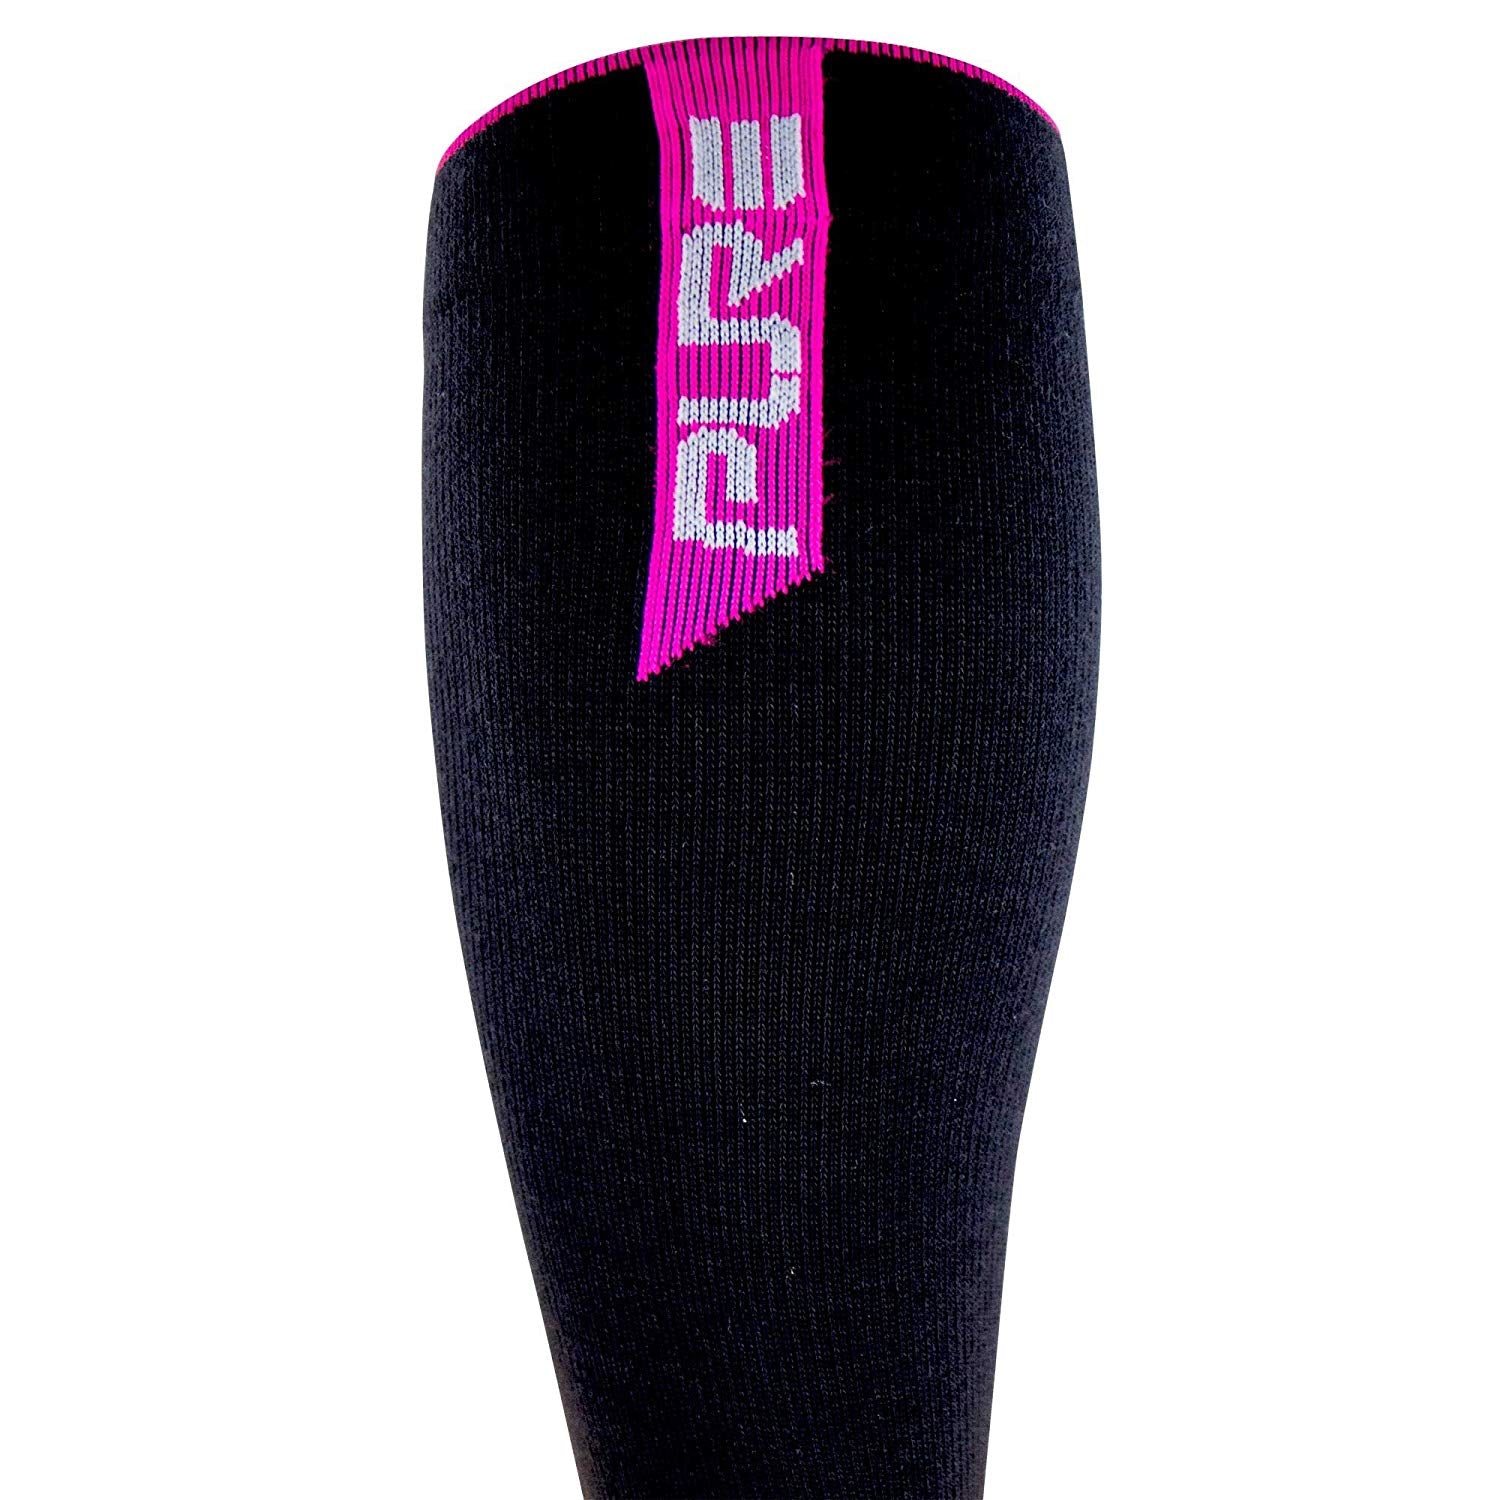 Thermal Compression Ski Socks